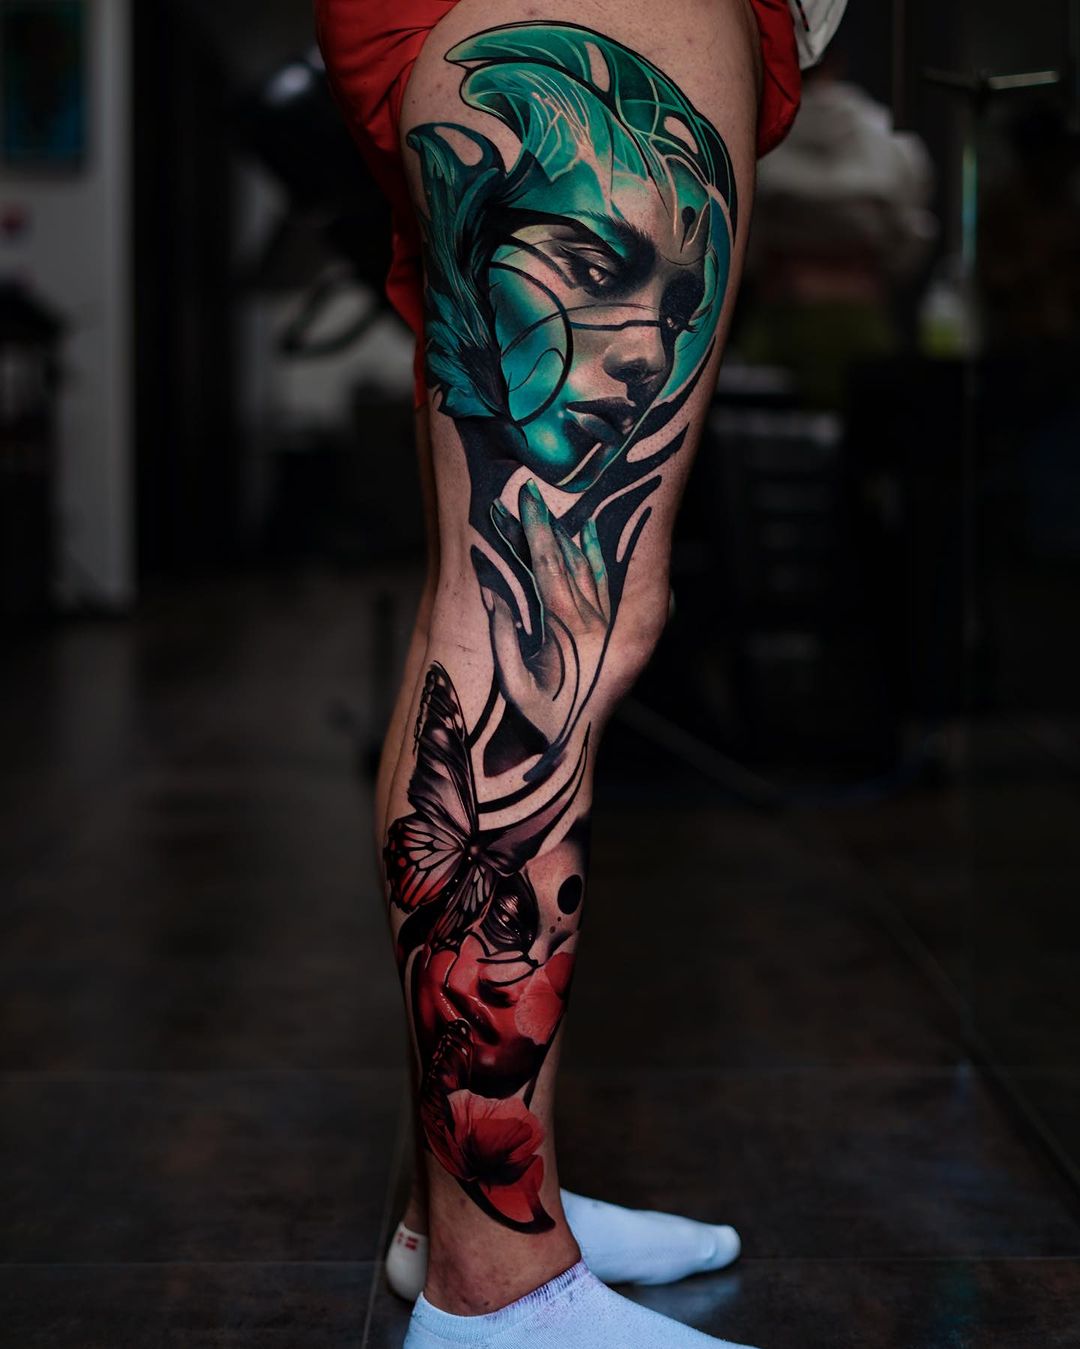 Full leg tattoo by sampaguitajay tattoo